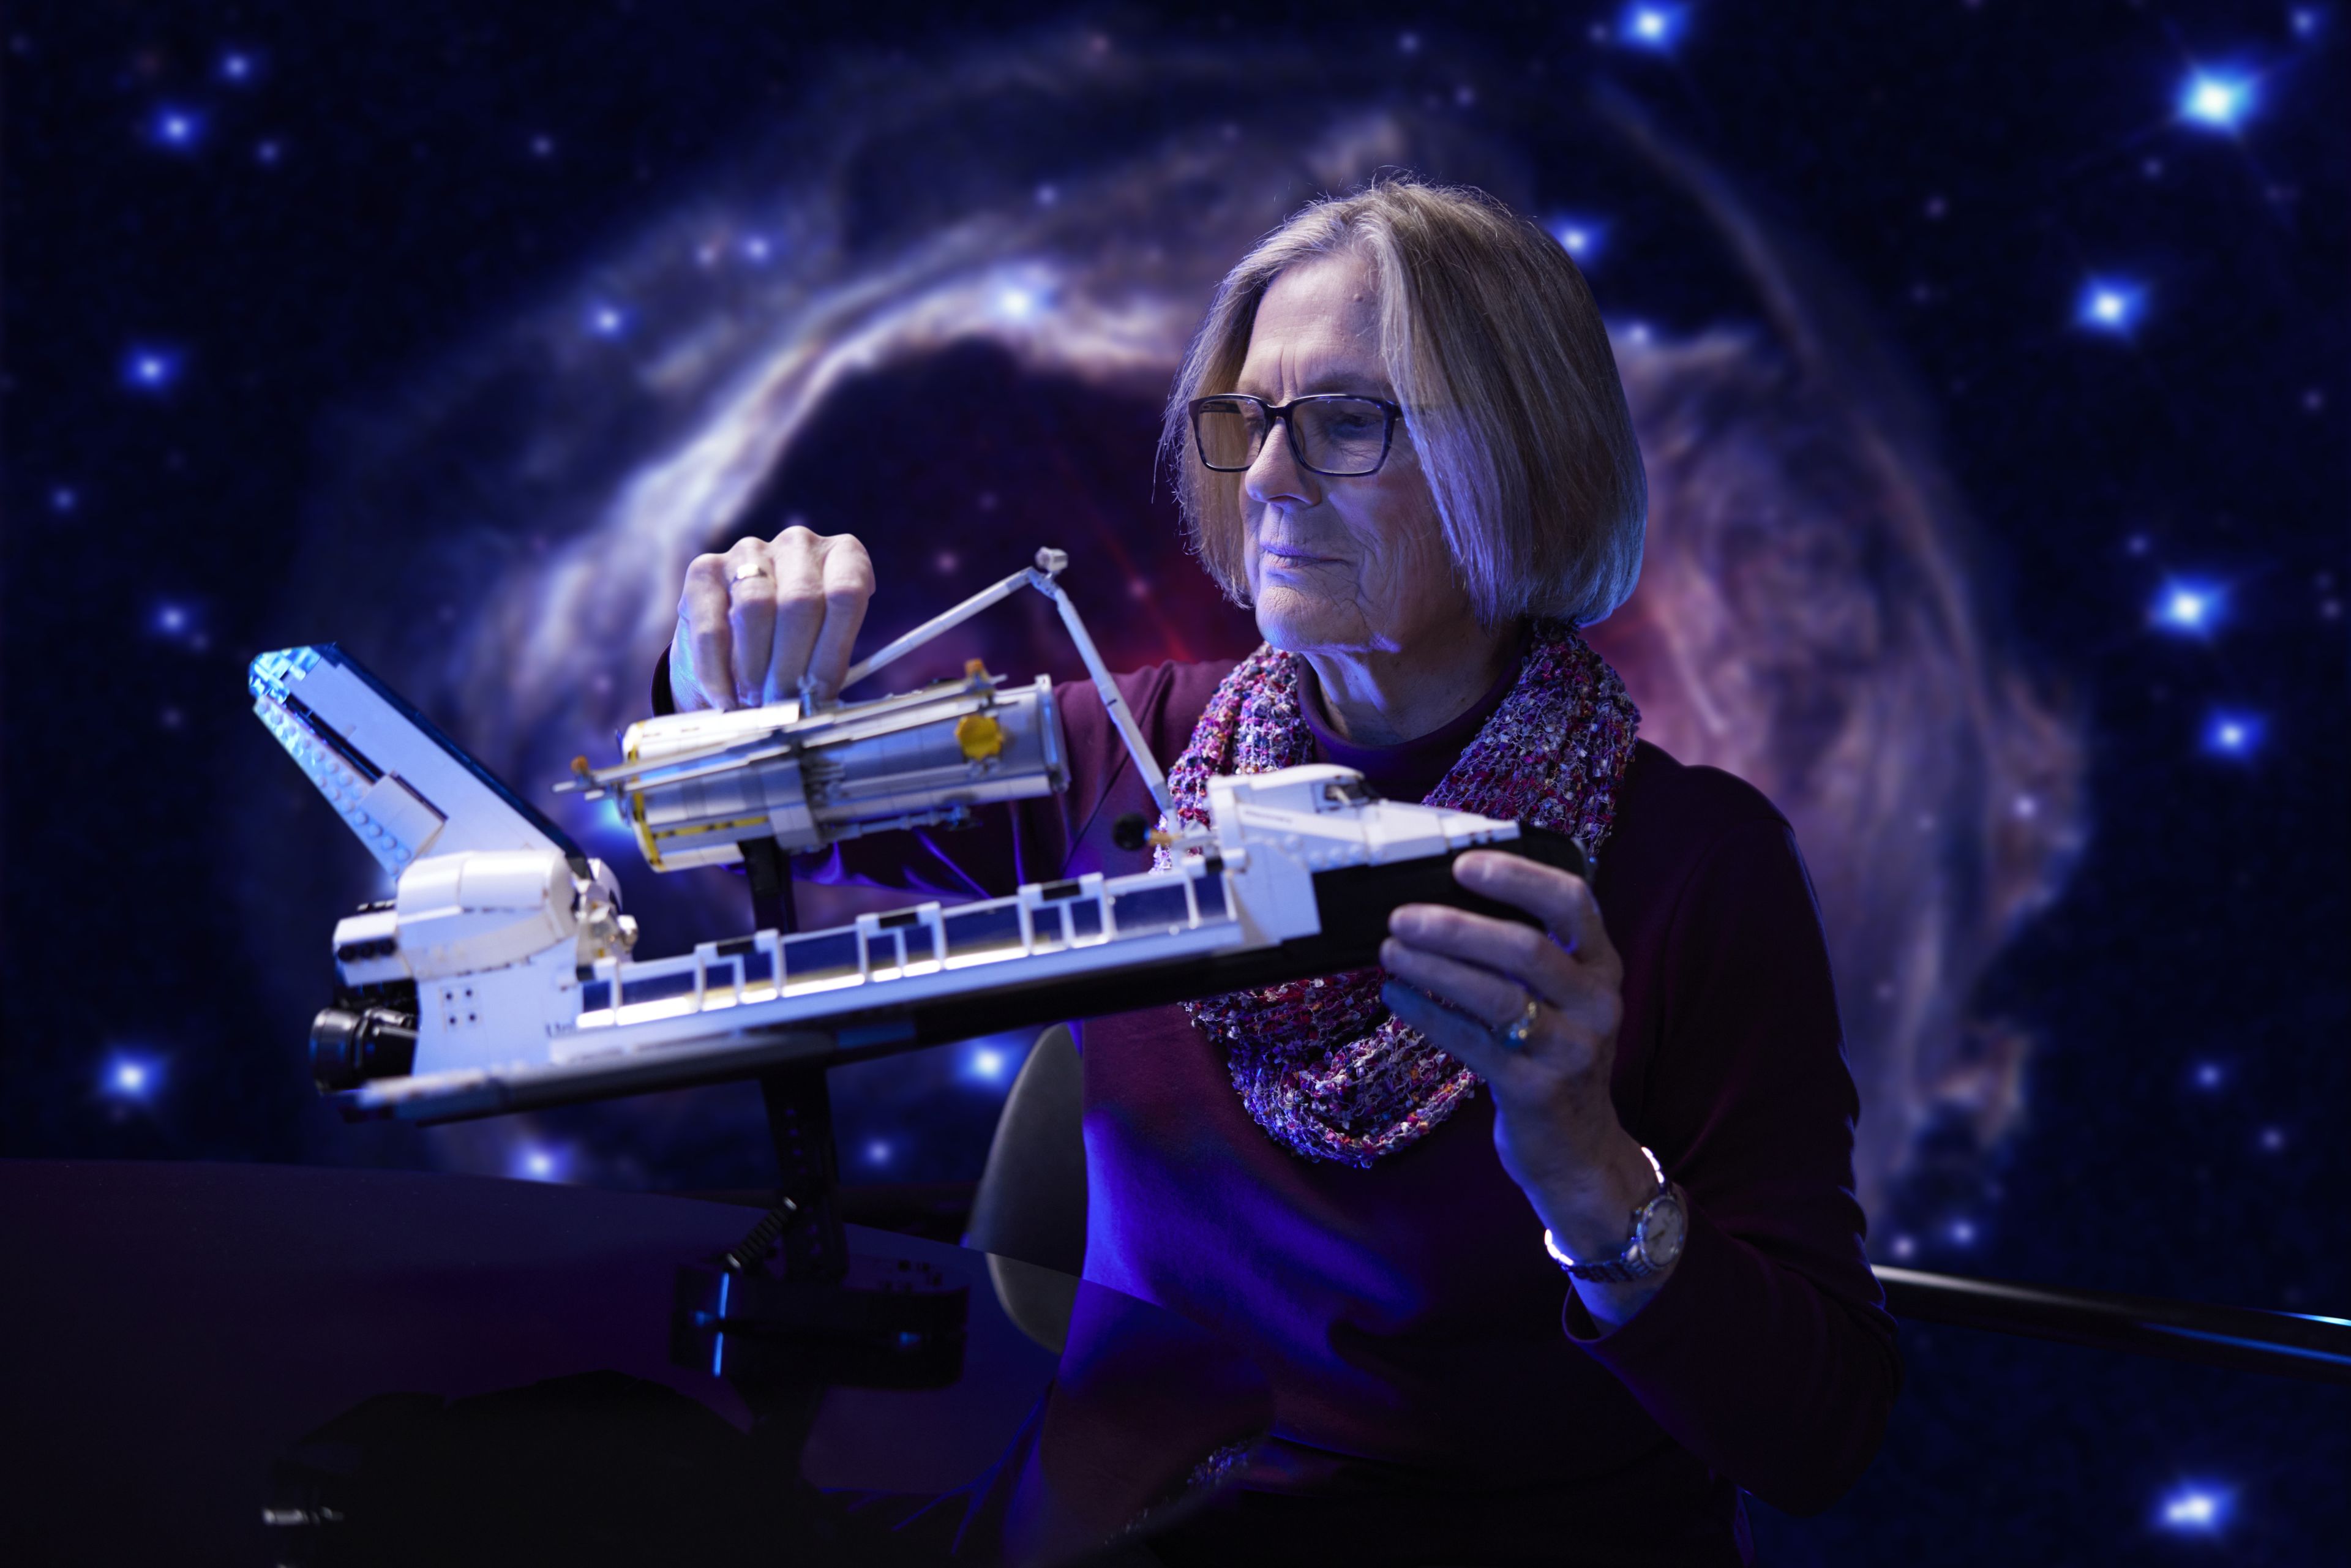 La astronauta Kathryn Sullivan, de la misión original, sostiene el set de Lego.